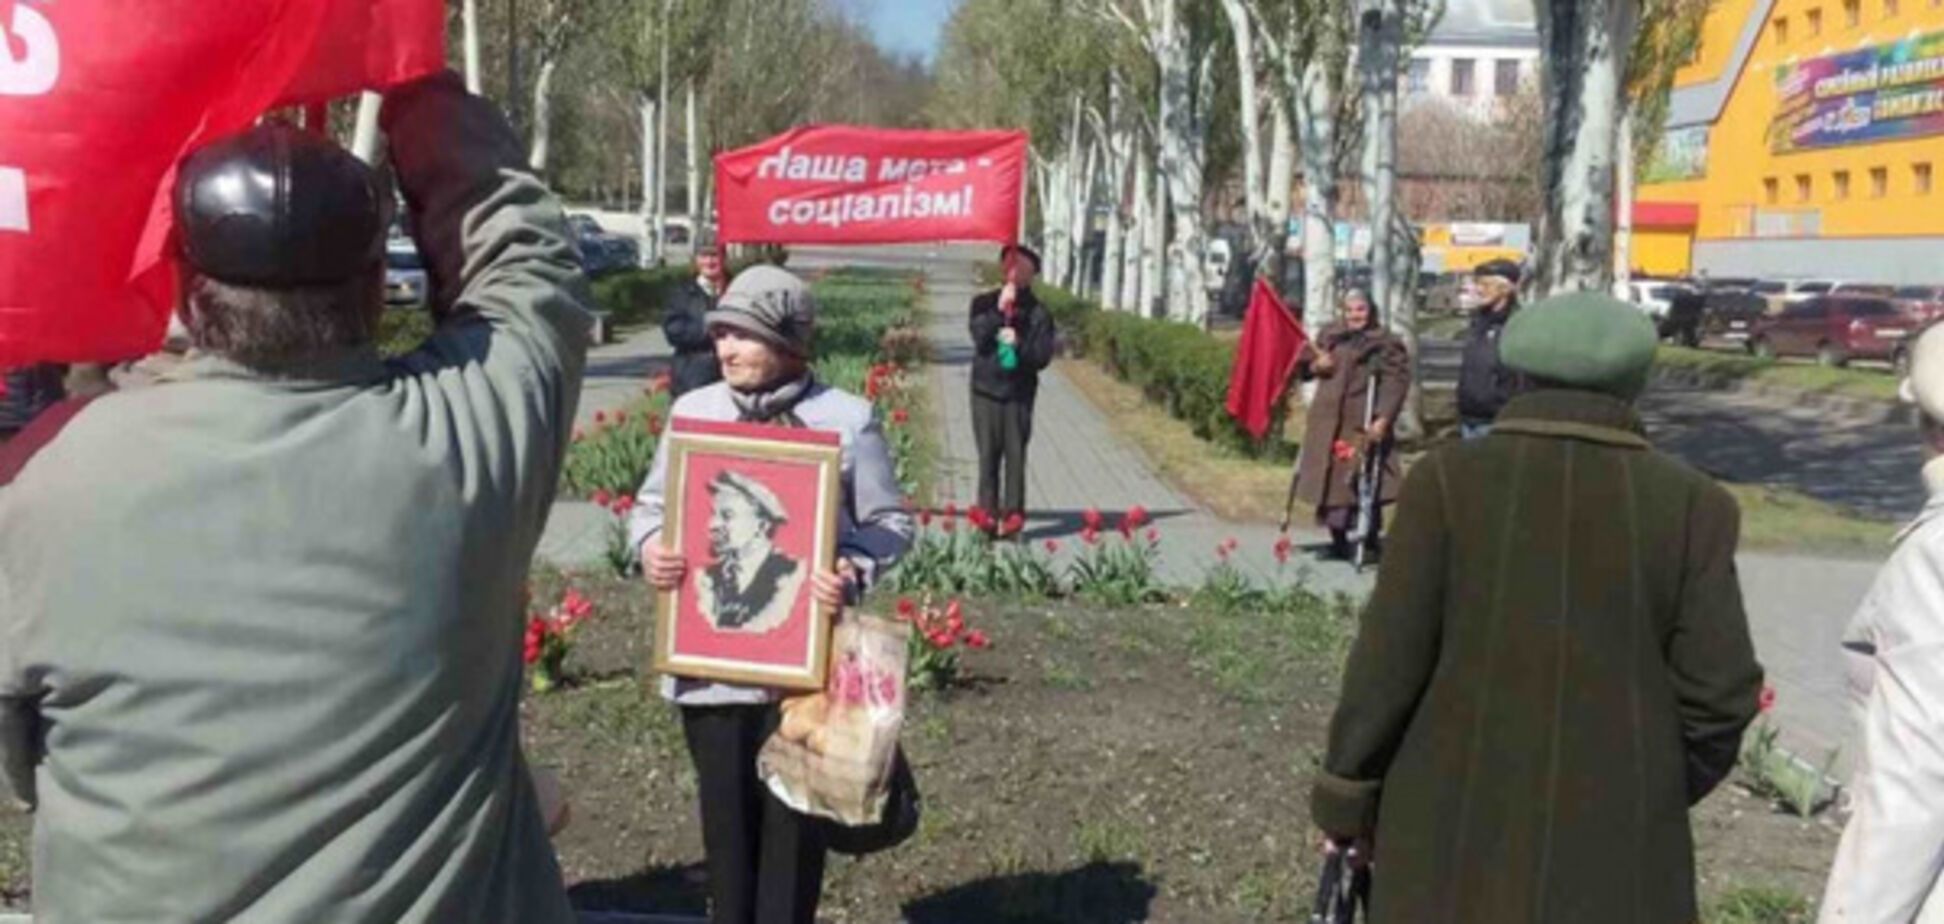 Людей не декоммунизируешь: в Запорожской области вышли на митинг в честь Дня рождения Ленина (ФОТО)